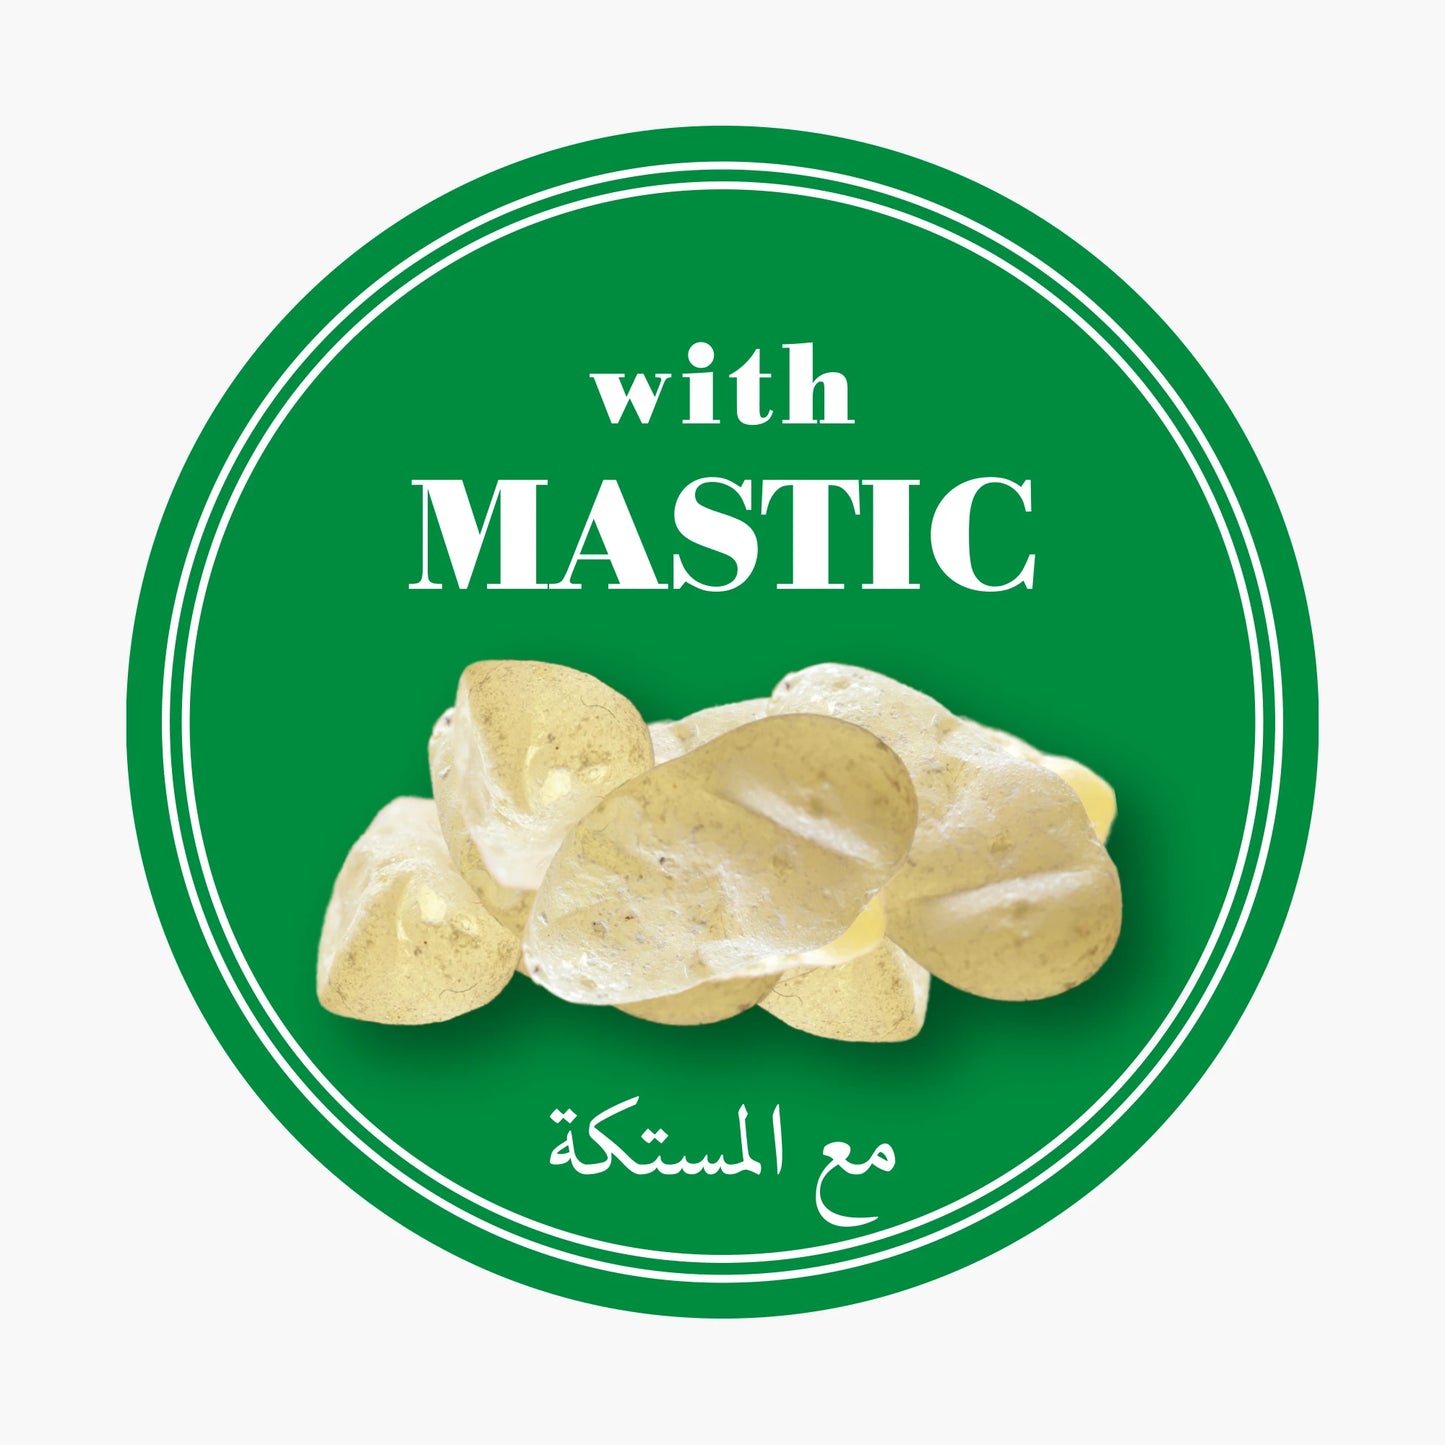 
                  
                    ТУРКЮ N.6 | Mastic Gum - Кофе по-турецки с хиосской мастикой (4x 125 г)
                  
                